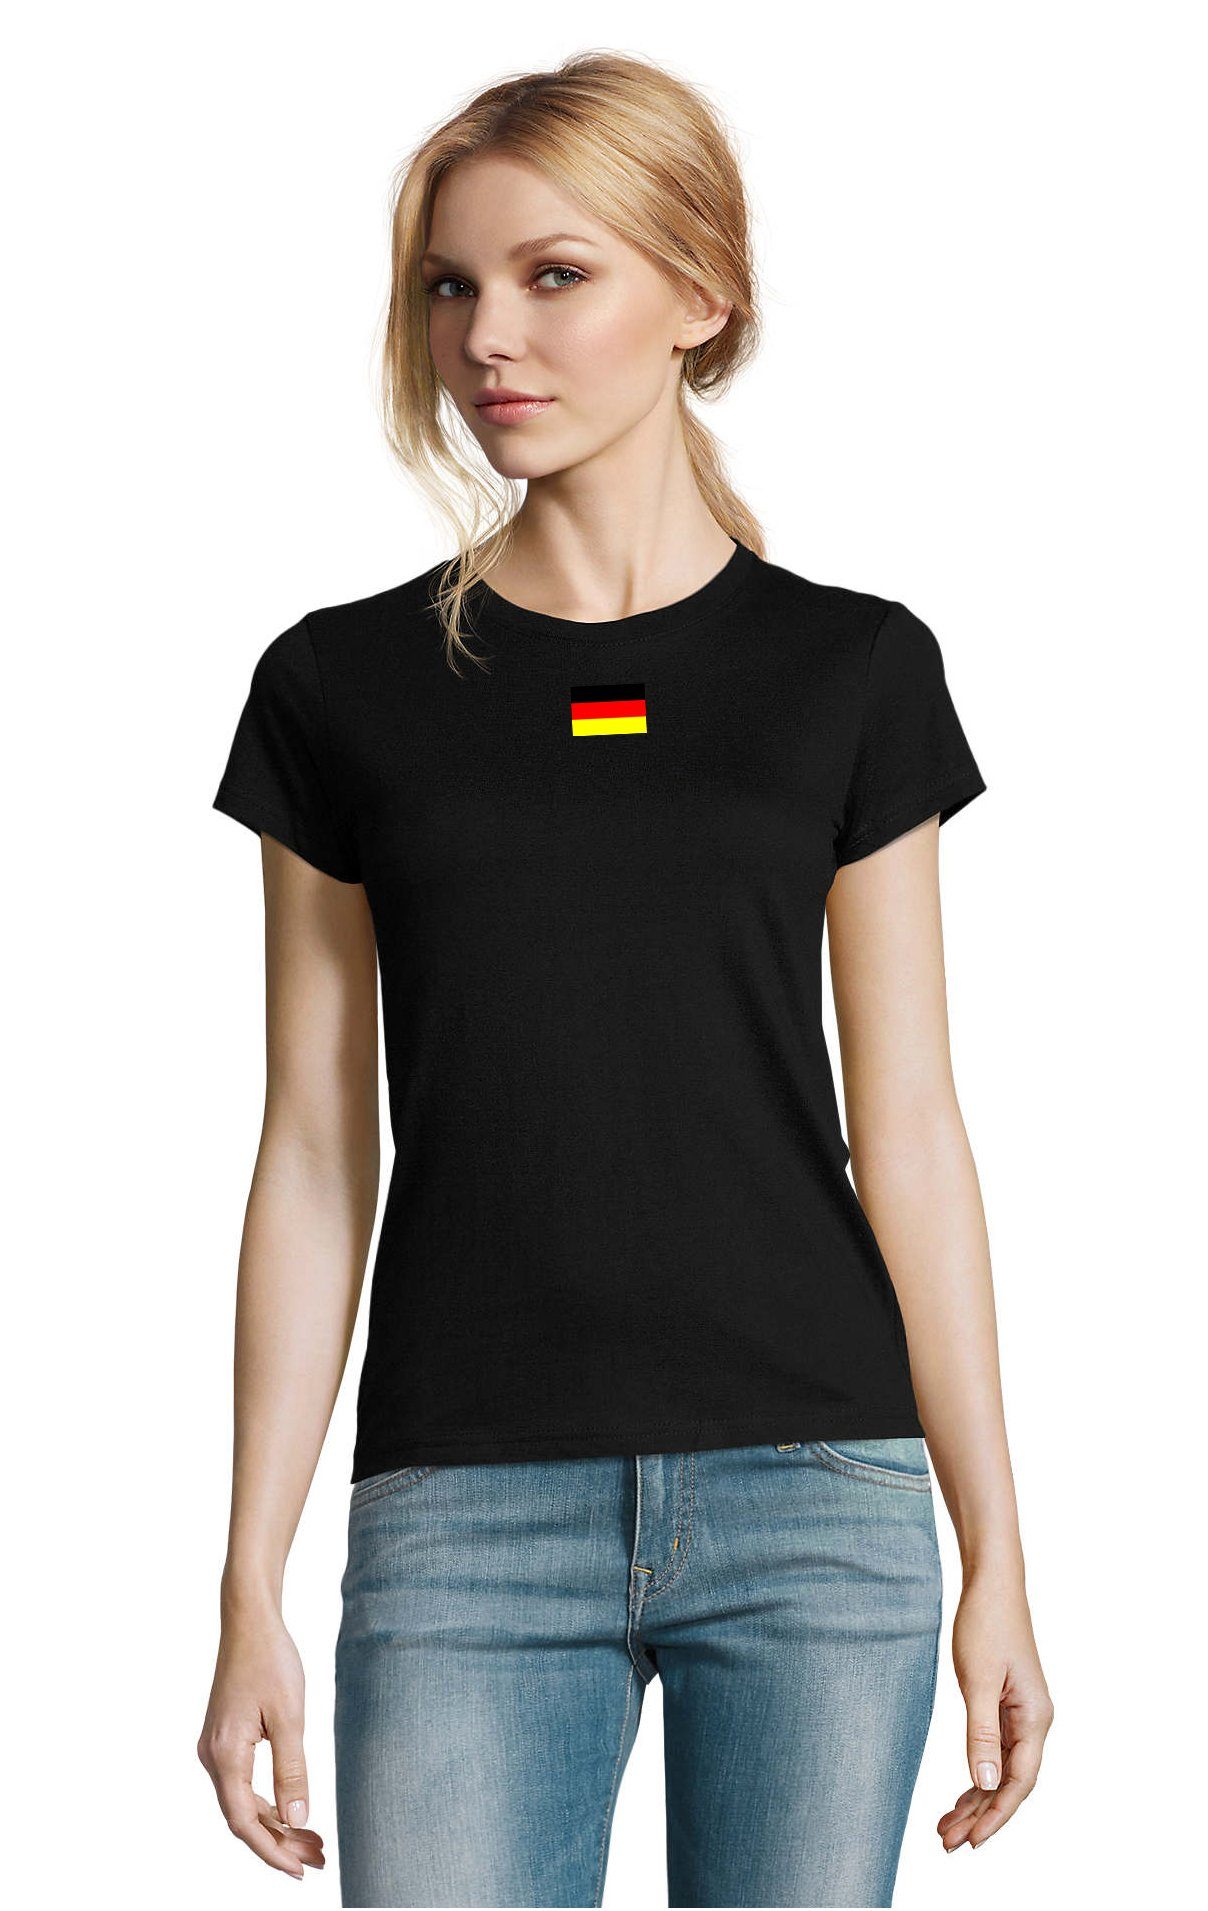 Blondie & Brownie T-Shirt Damen Nation Deutschland Germany Ukraine USA Army Armee Peace